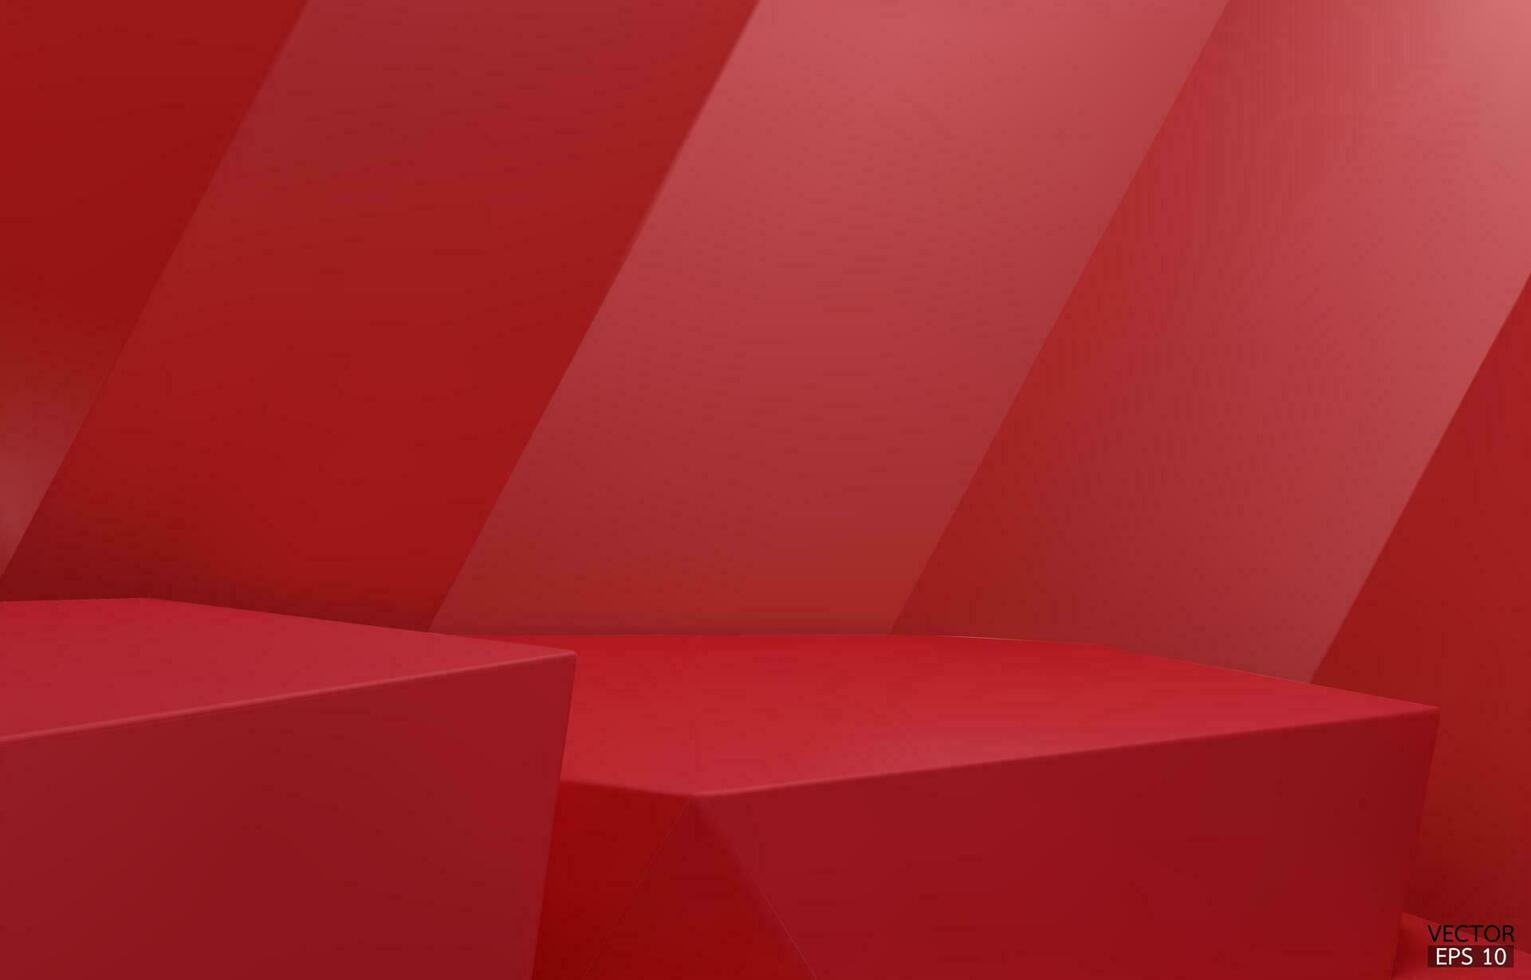 3d meetkundig 2 stap podium. rood zeshoek kubus, plein podium in rood achtergrond. concept tafereel stadium vitrine, Product, Promotie uitverkoop, banier, presentatie, kunstmatig. 3d vector illustratie.